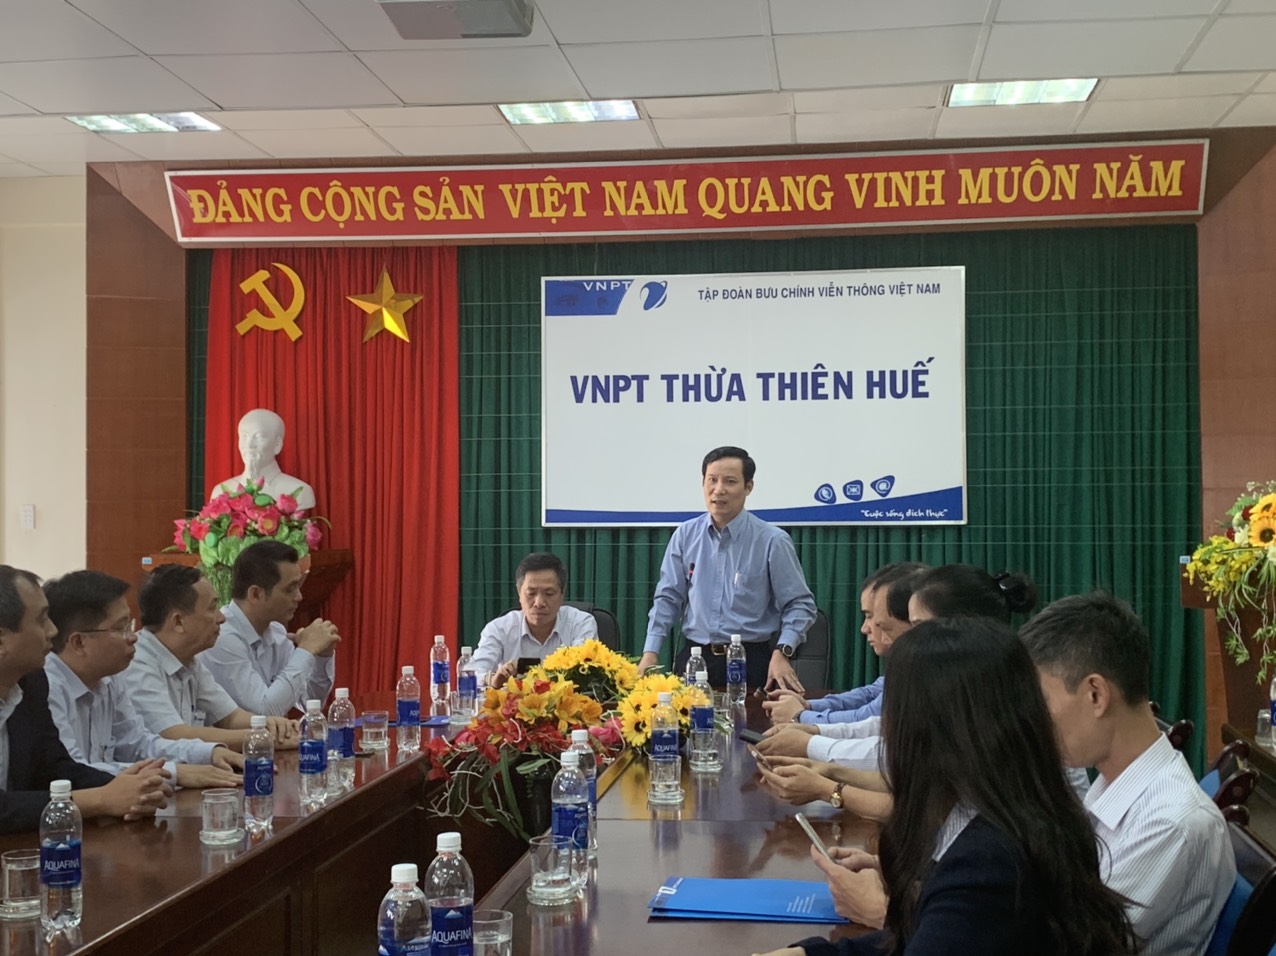 Đến thăm và làm việc với Chi nhánh VNPT Thừa Thiên Huế, đồng chí Phạm Tấn Công, Phó Bí thư Thường trực Đảng ủy Khối chia sẻ, động viên cán bộ, đảng viên và người lao động Chi nhánh thực hiện tốt nhiệm vụ.